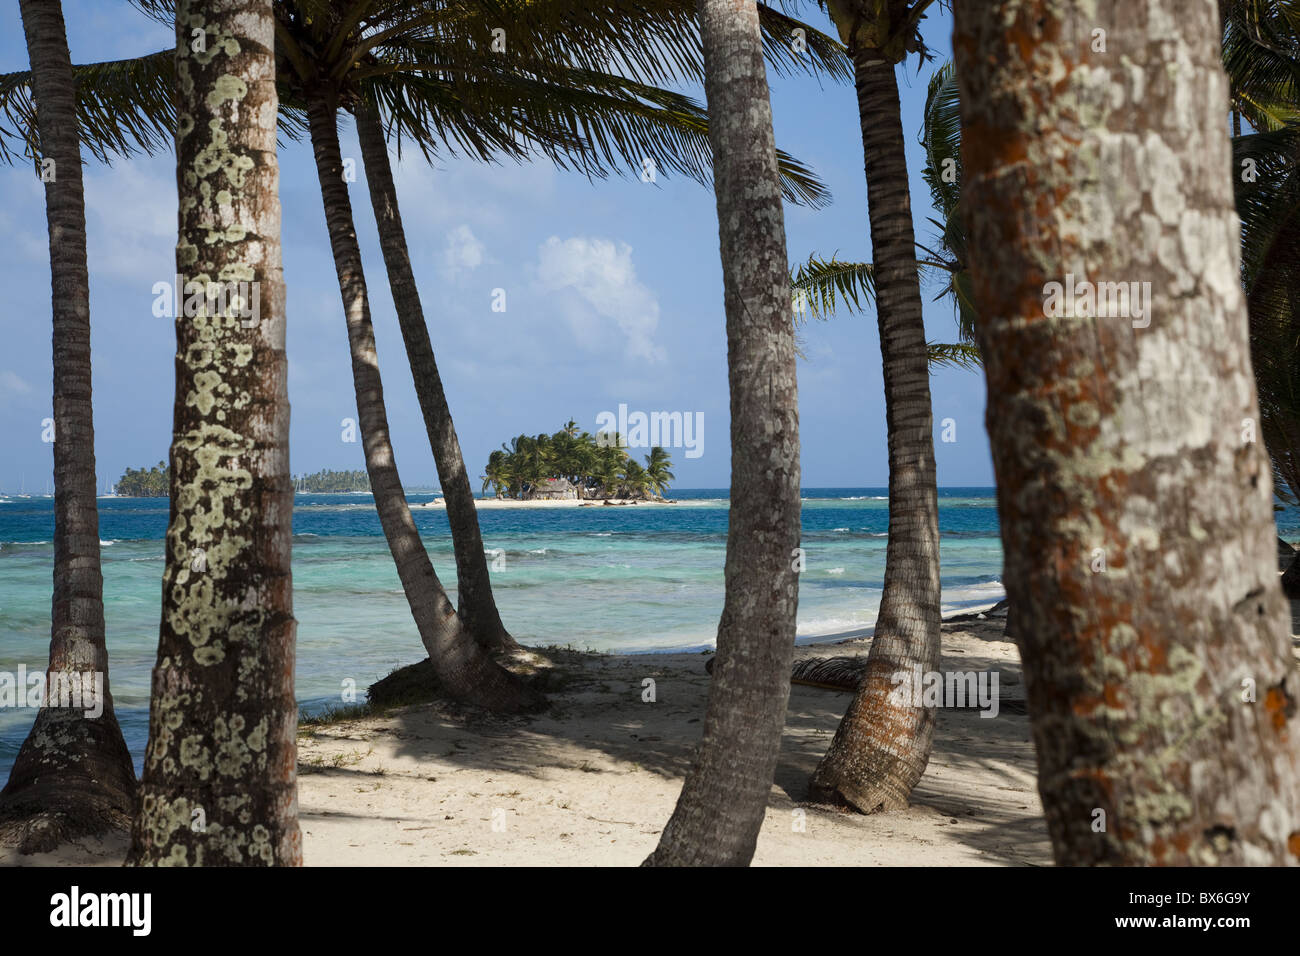 Îles de l'archipel de San Blas dans la mer des Caraïbes, vue à travers les palmiers sur Dog Island, Panama, Amérique Centrale Banque D'Images